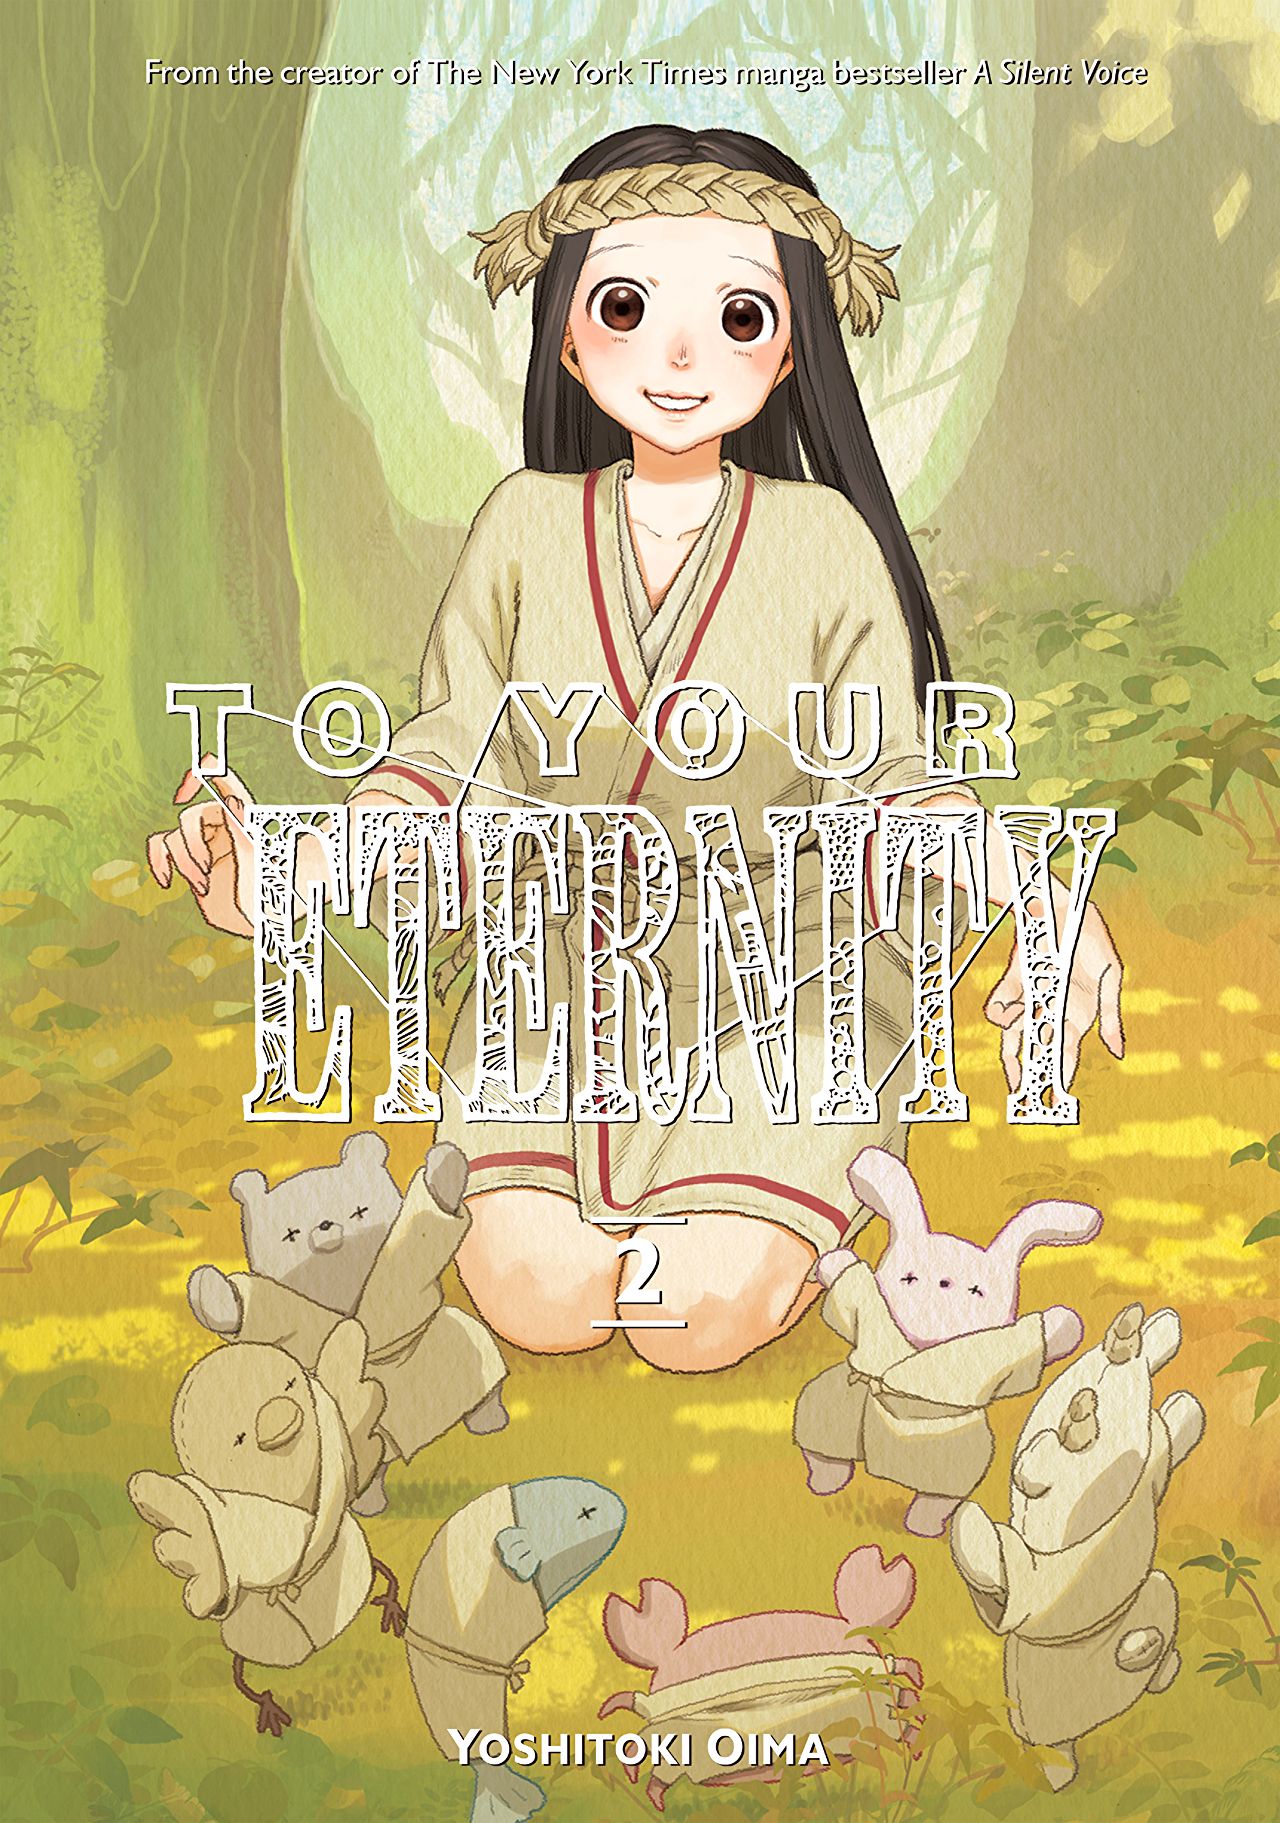 eternity 2010 english subtitle